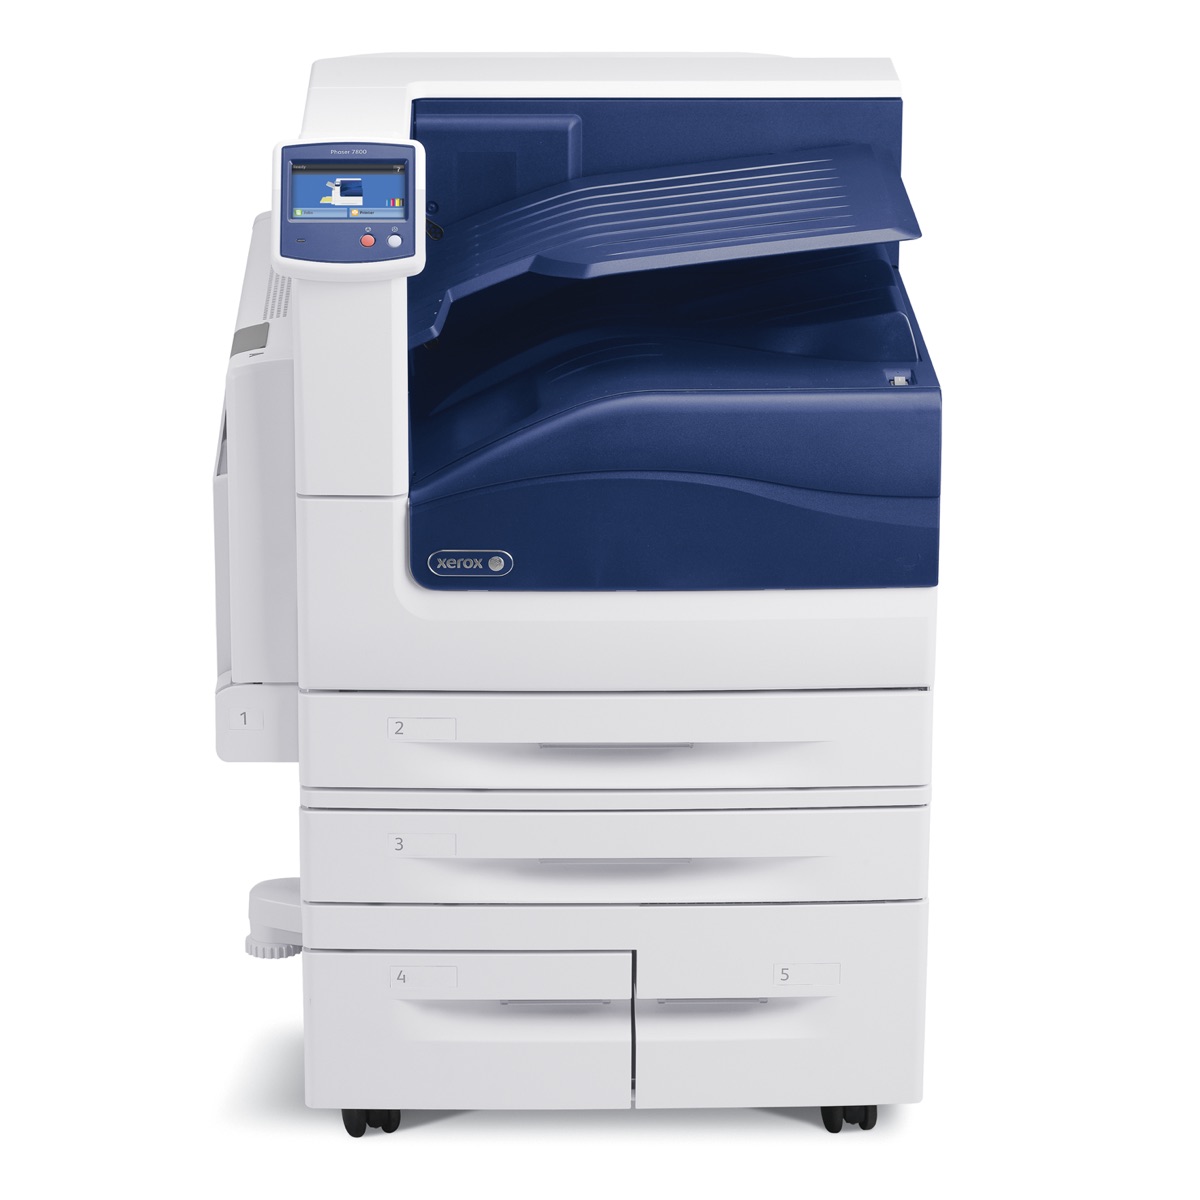 Xerox Printers:  The Xerox Phaser 7800DX Printer